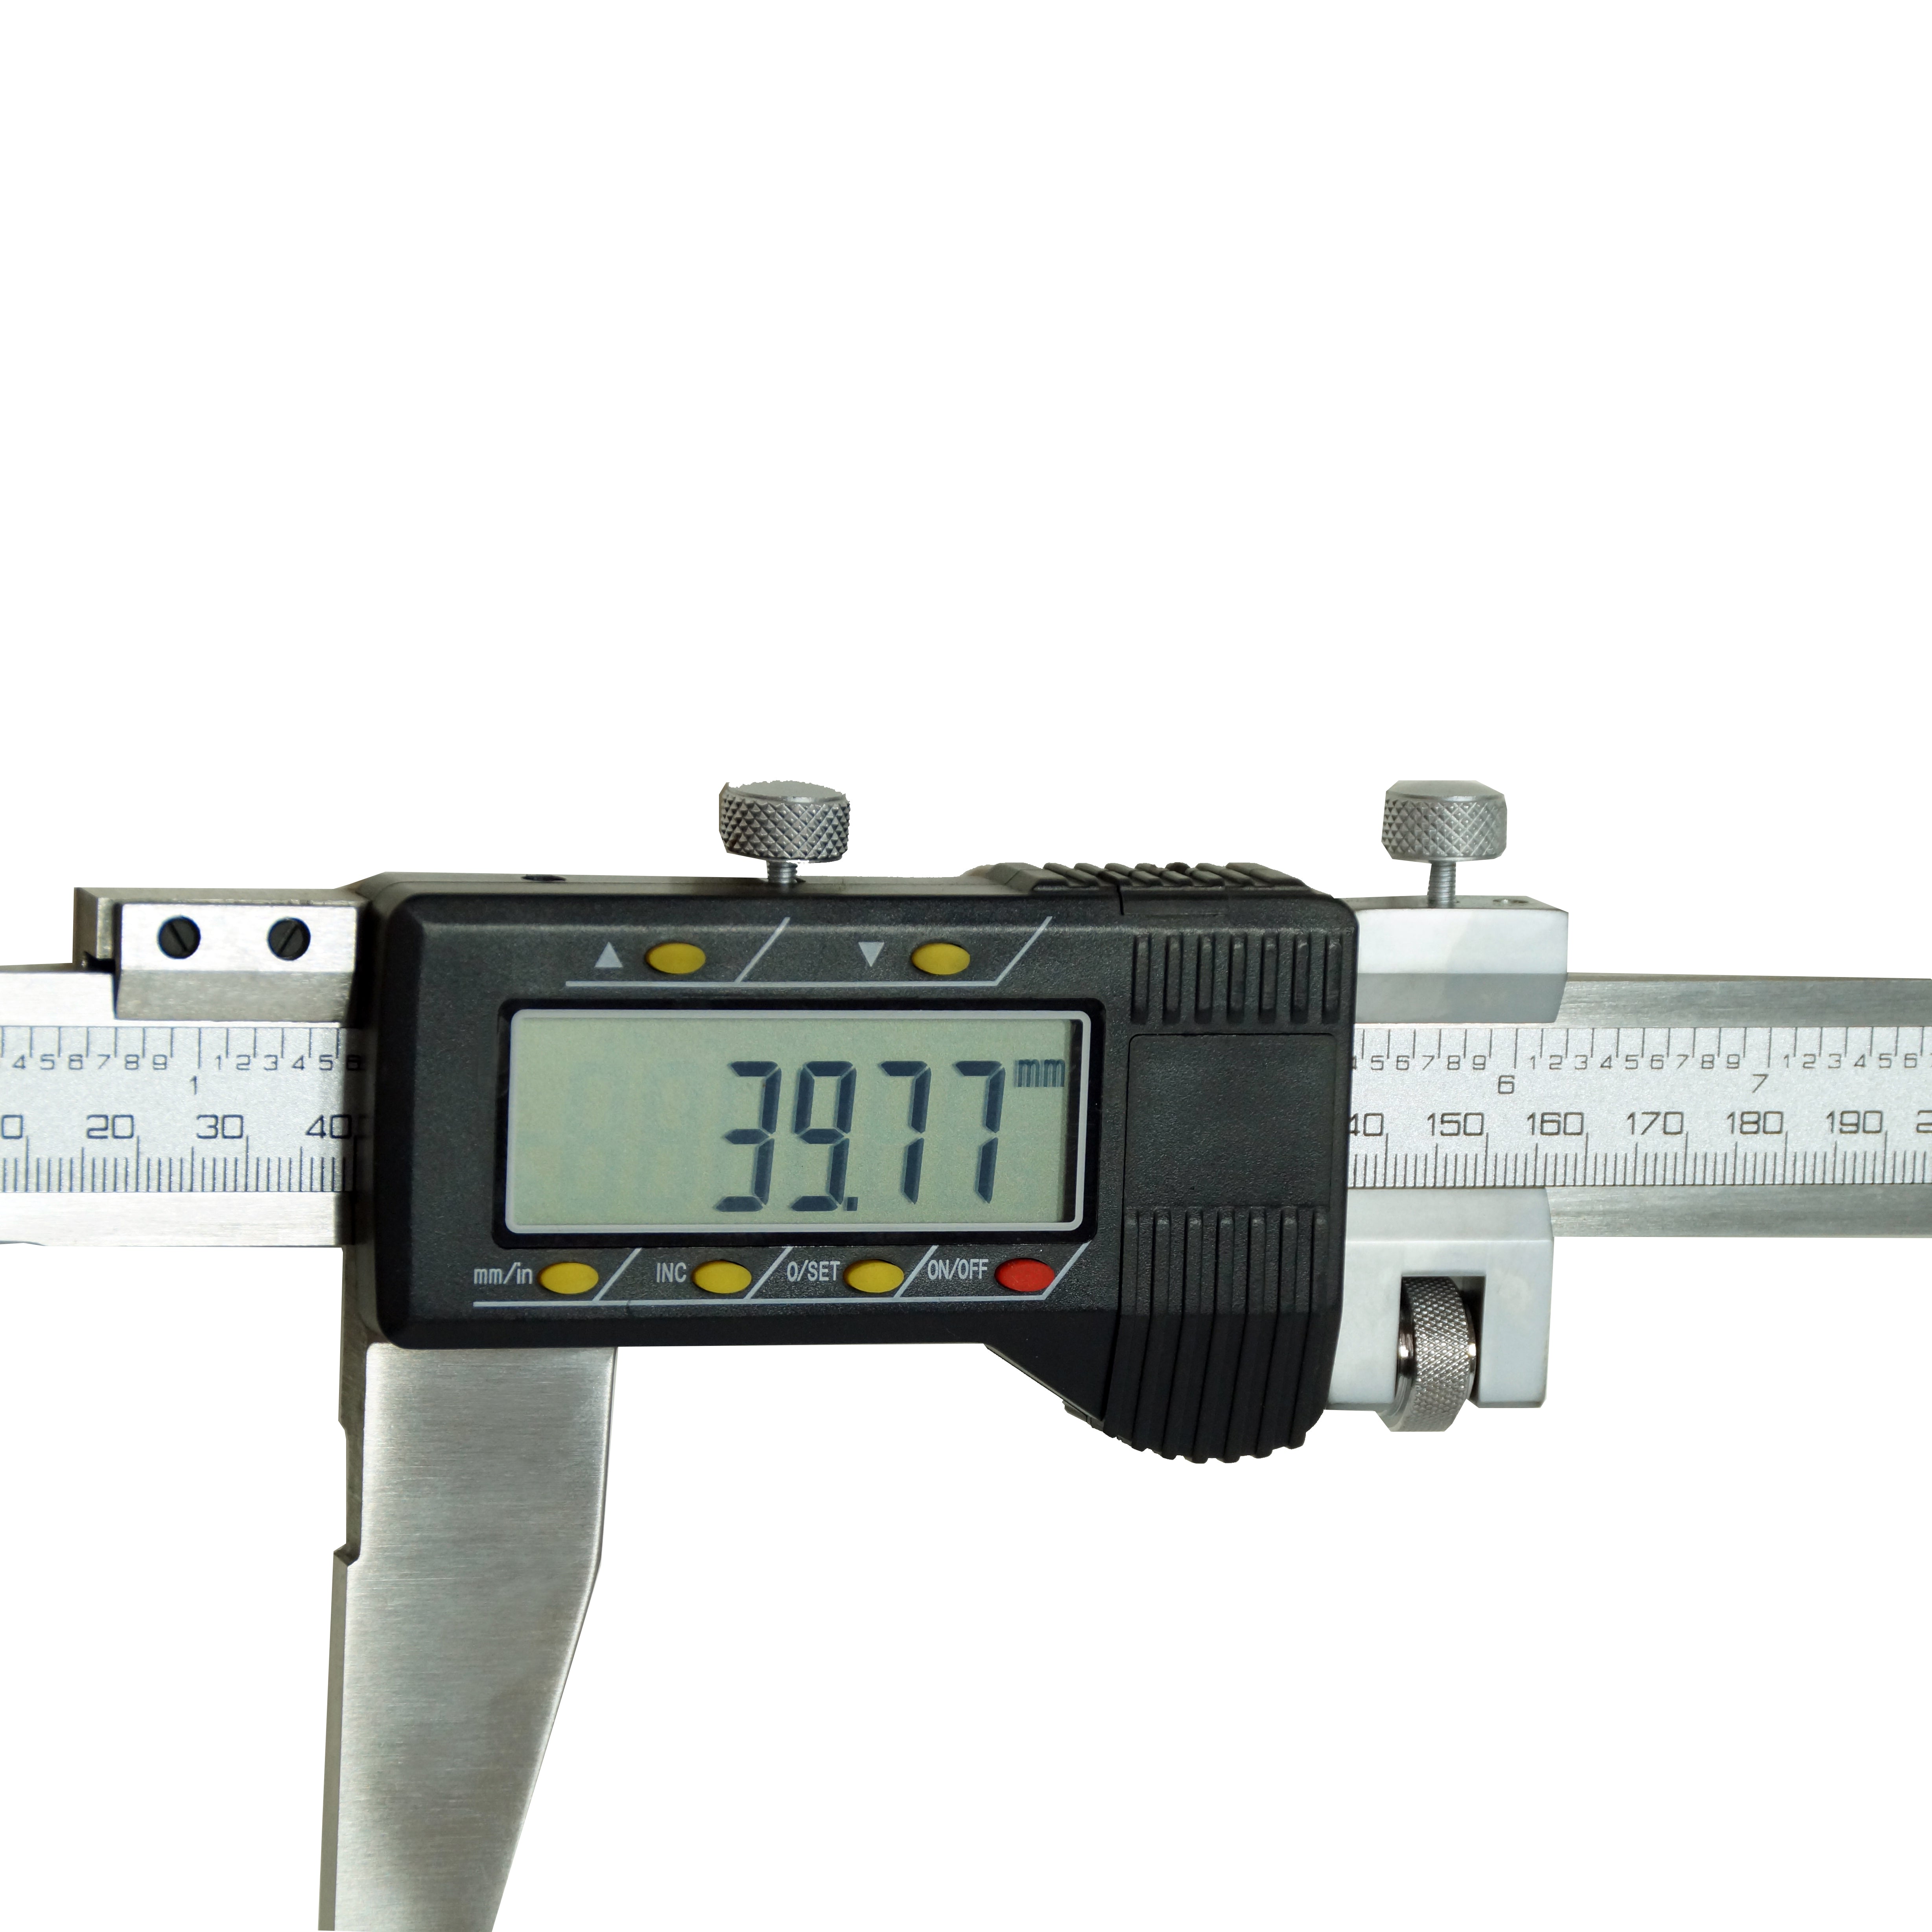 Digital Vernier Caliper 150mm,6" / 200mm, 8" / 300mm,12" / 500mm, 20" / 600mm, 24"